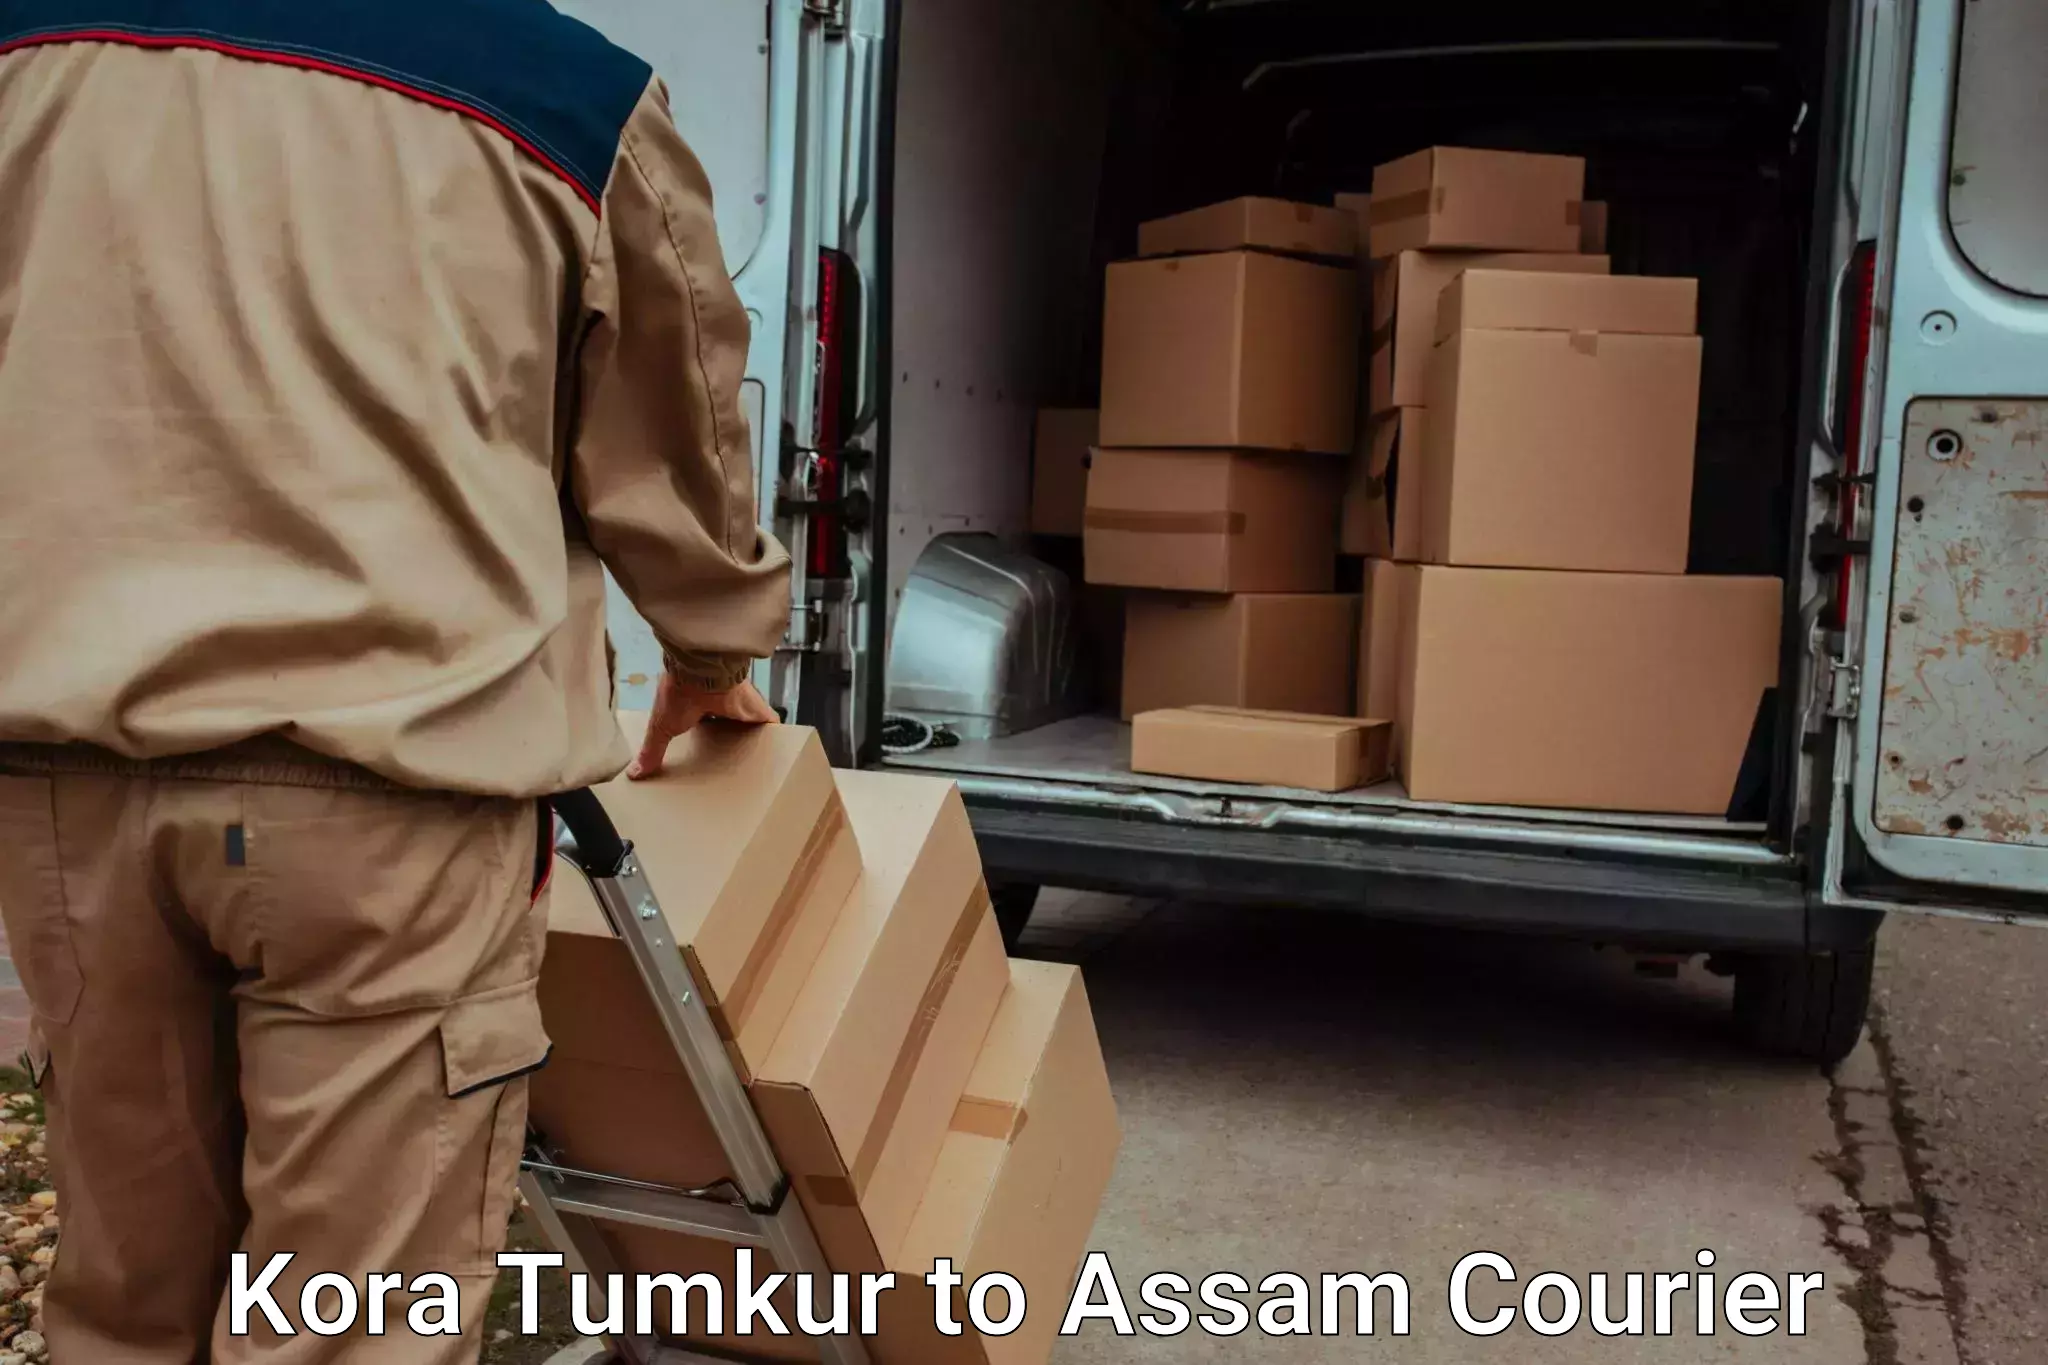 Reliable baggage delivery Kora Tumkur to Jamuguri